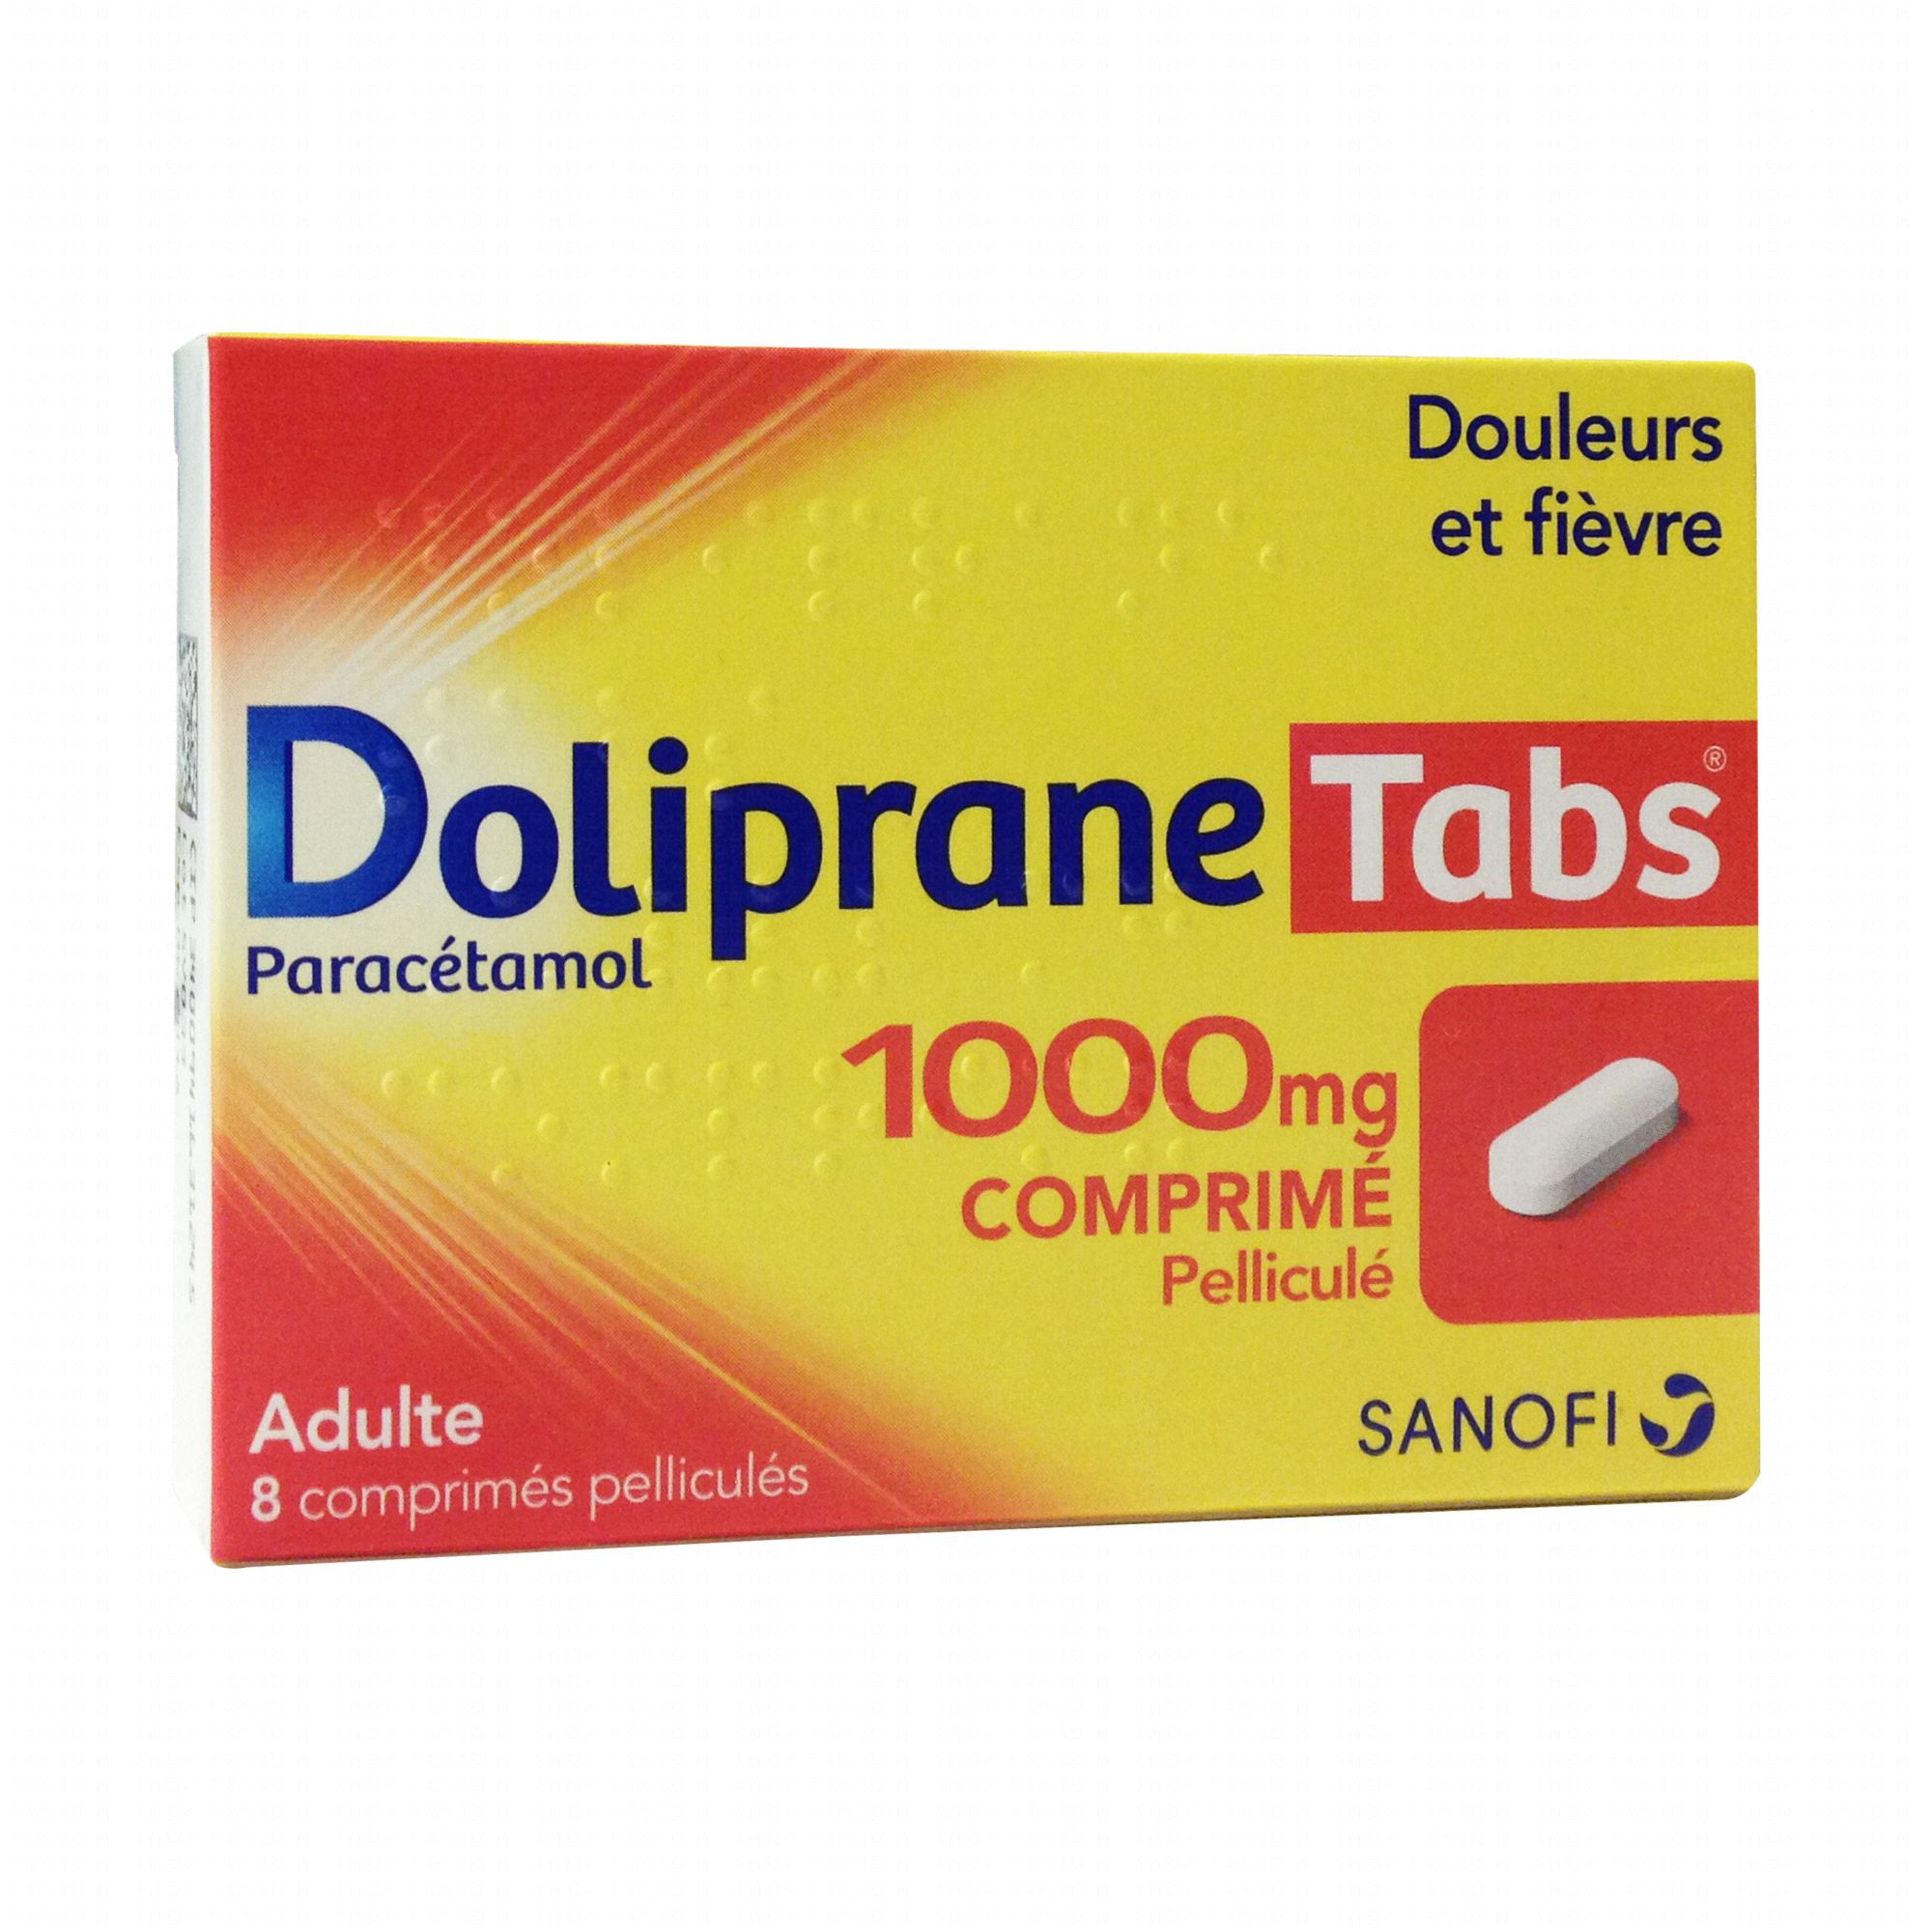 DOLIPRANE 1000 mg SANOFI Boite de 8 comprimés